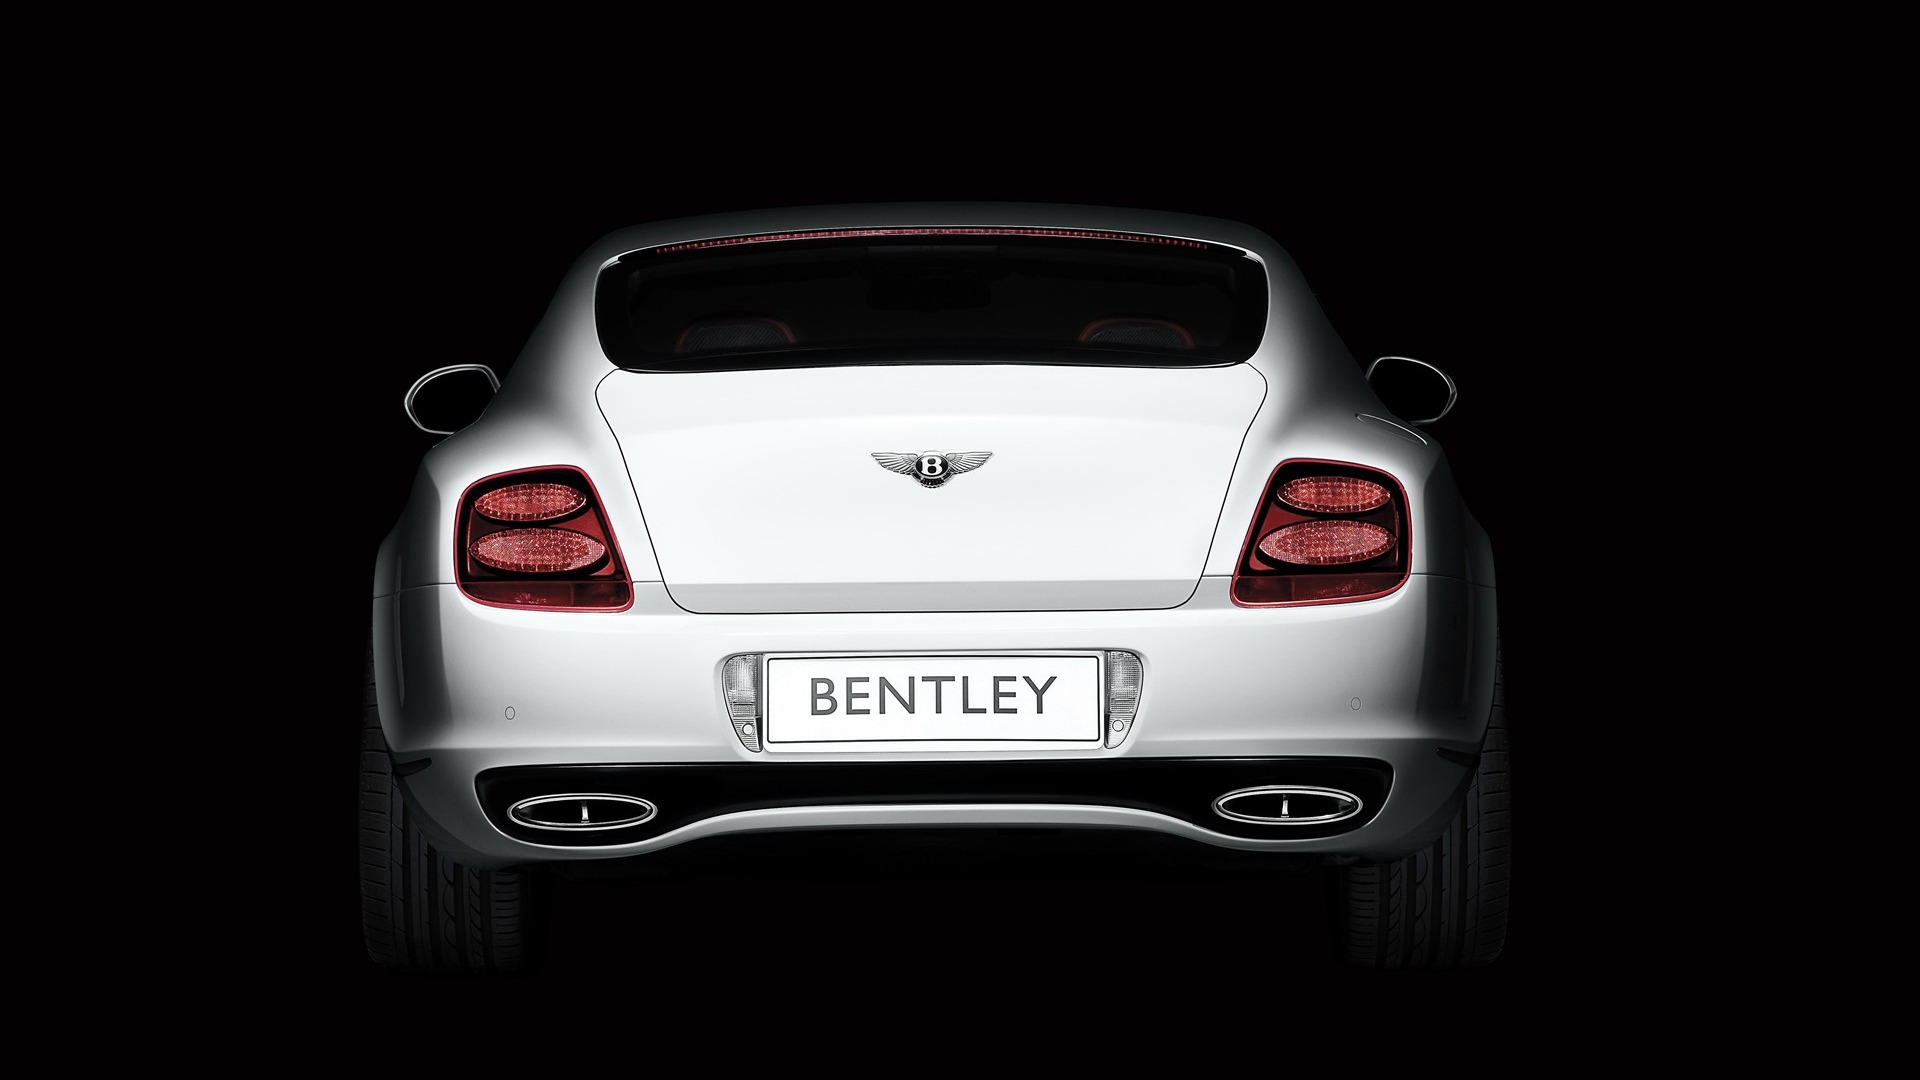 Bentley 宾利 壁纸专辑(一)4 - 1920x1080